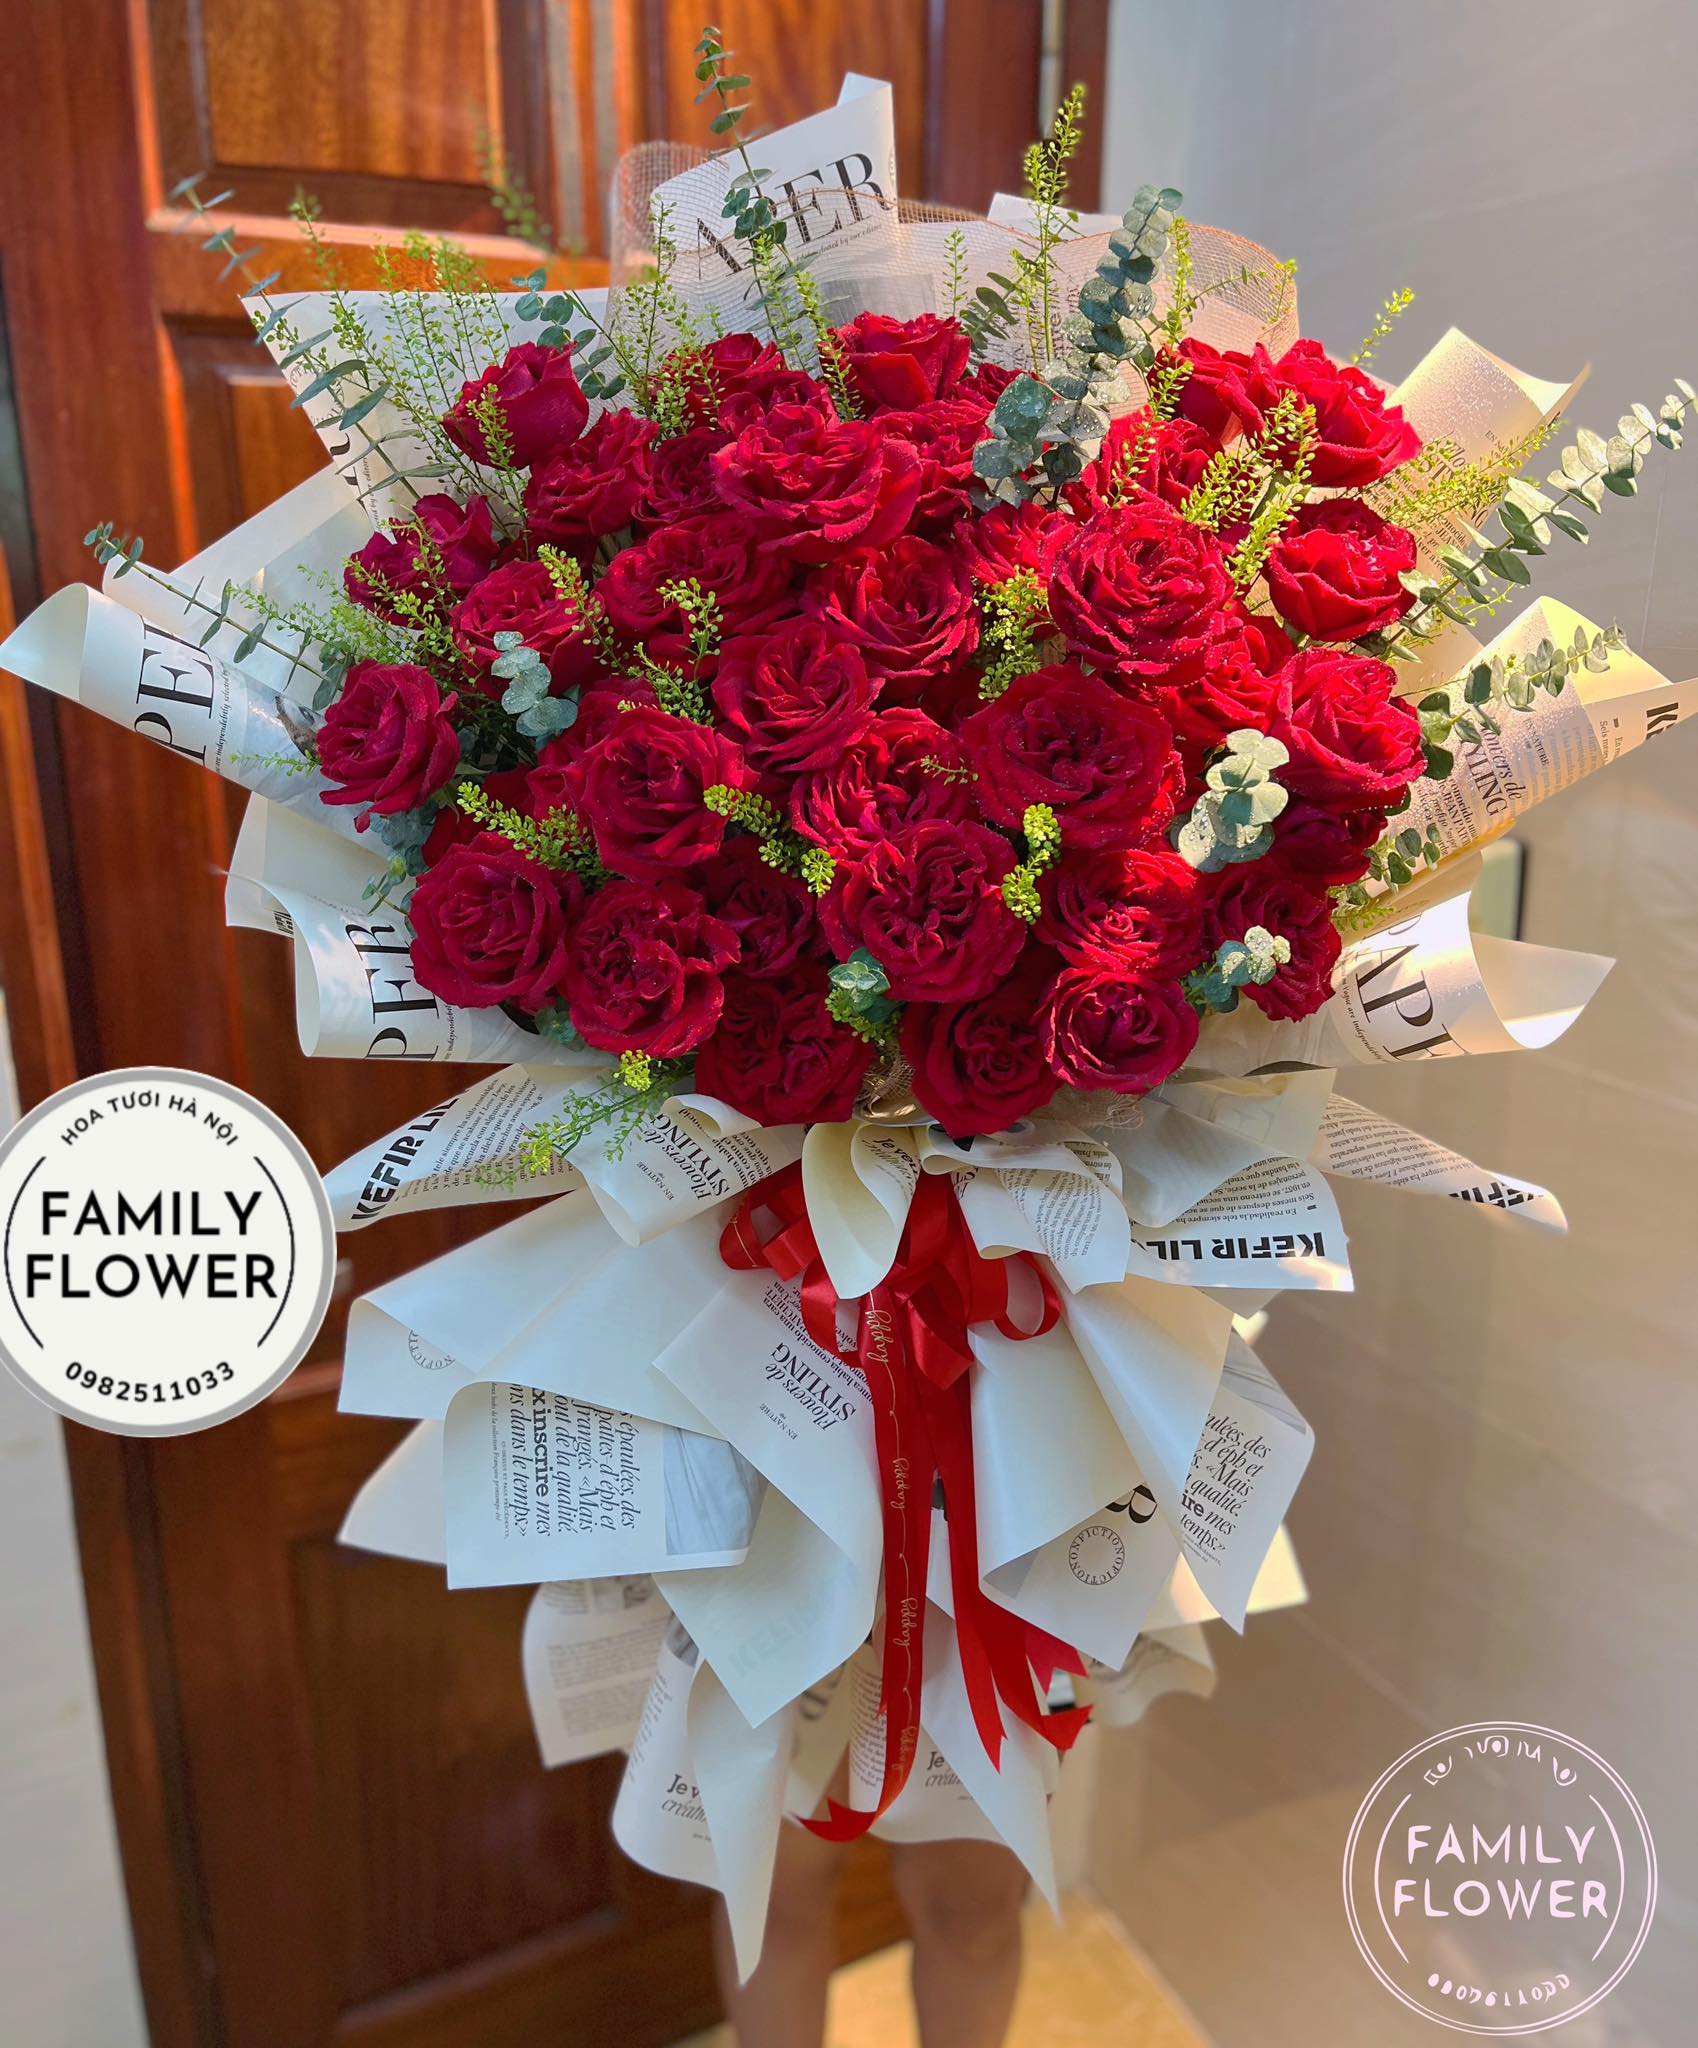 Bó hoa hồng đỏ tặng người yêu nhân dịp 20 tháng 10 ở quận Thanh Xuân , Đống Đa , Hoàn Kiếm Hà Nội